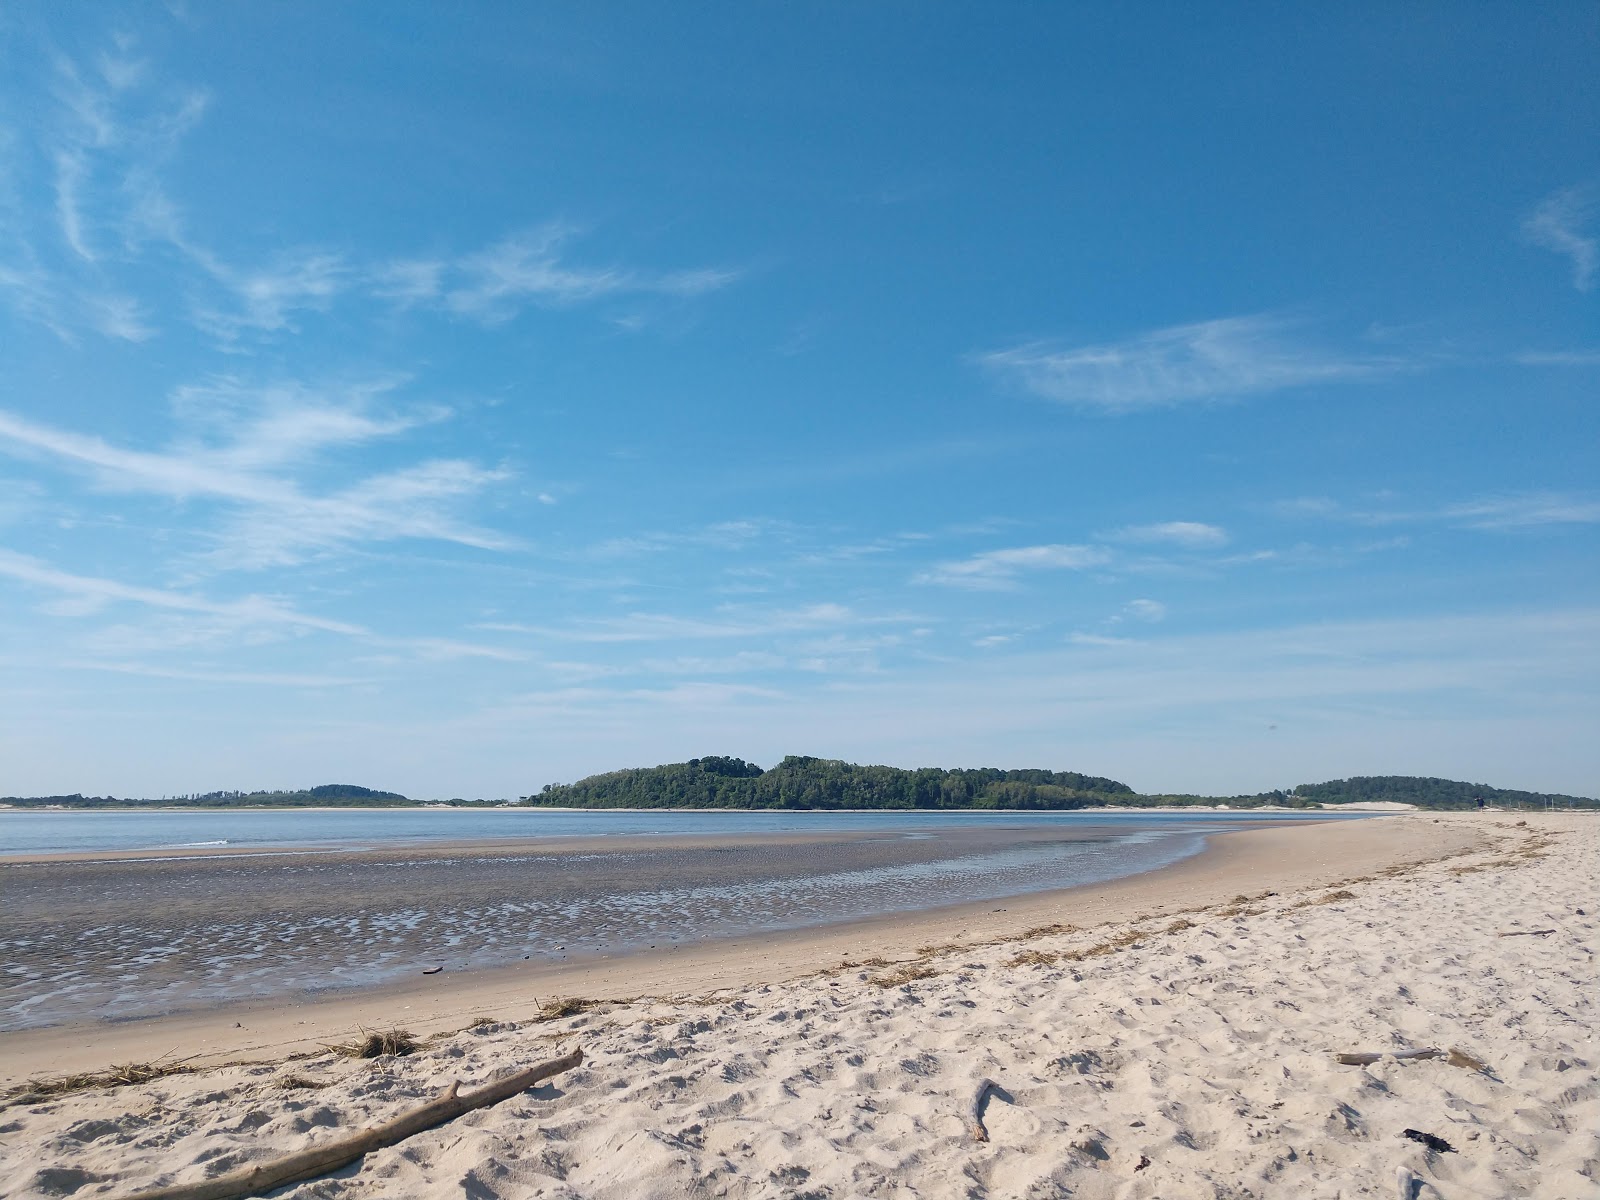 Zdjęcie Sandy Point beach - popularne miejsce wśród znawców relaksu